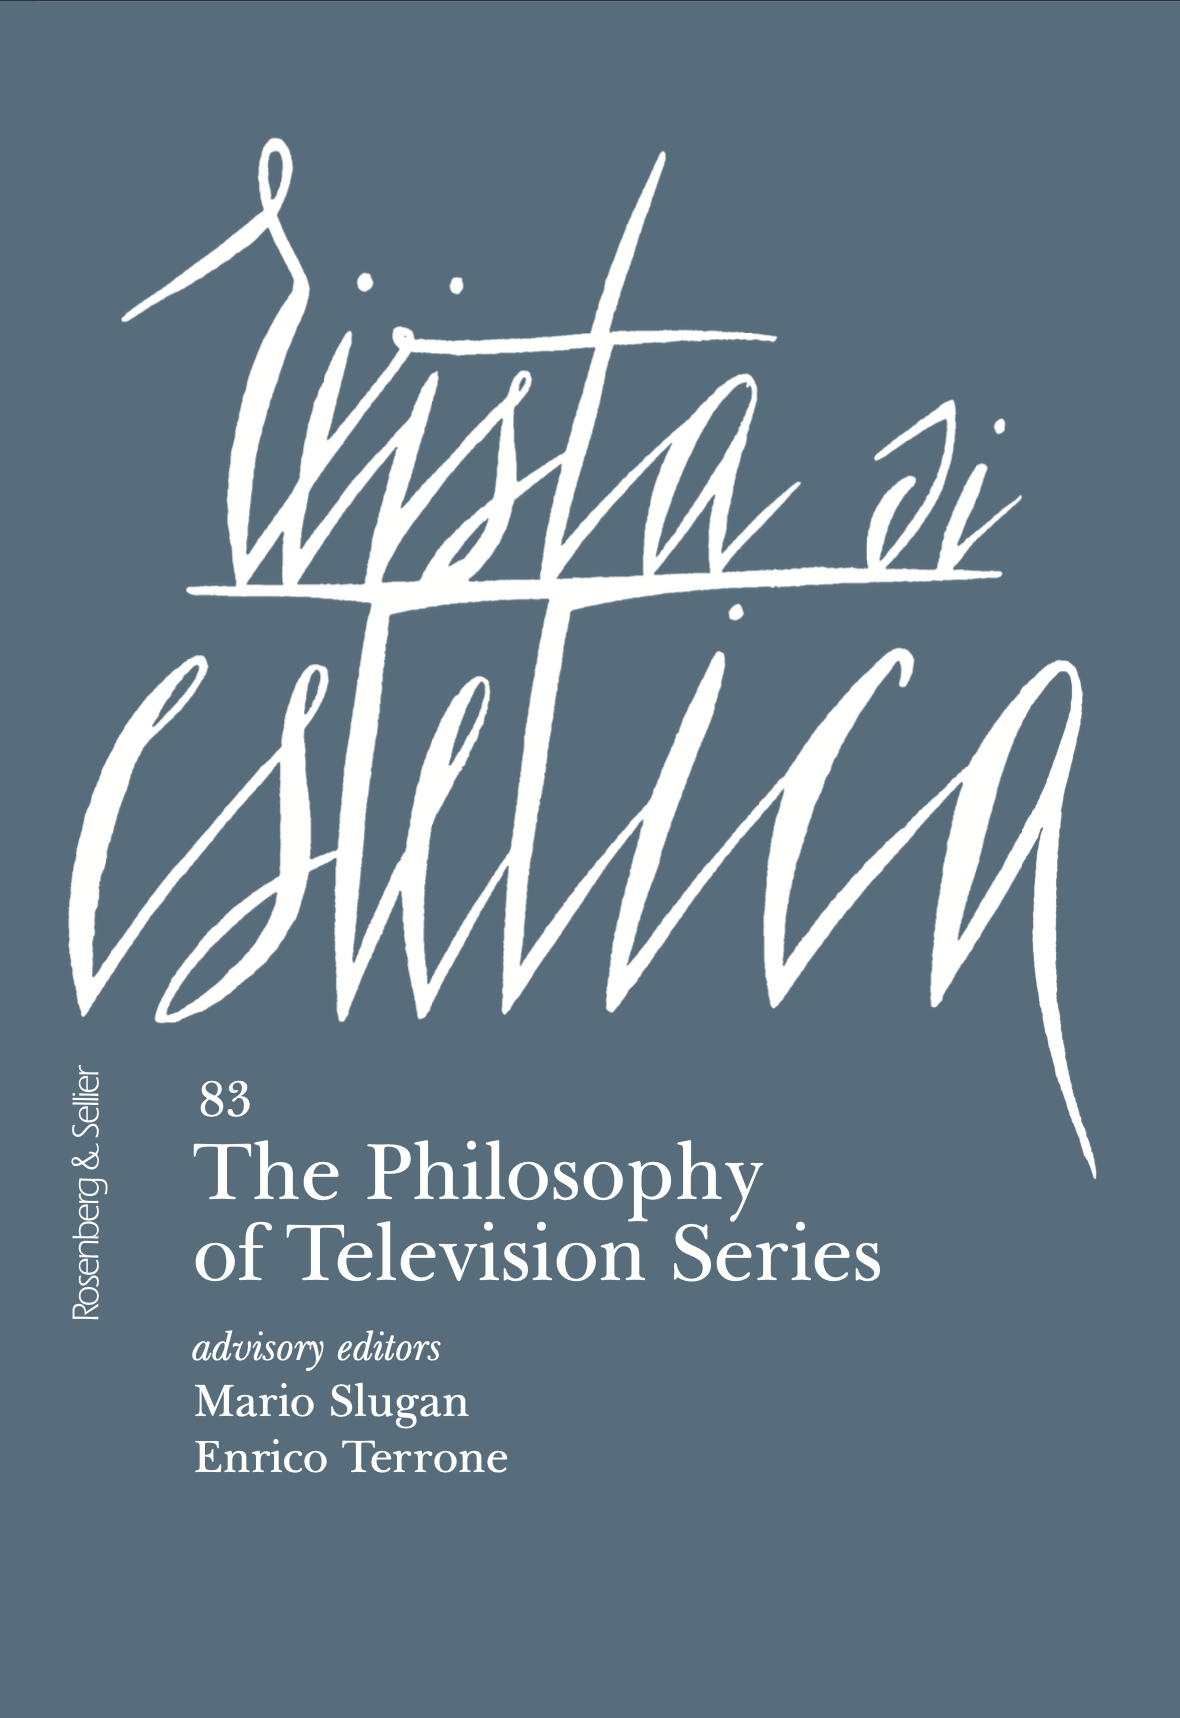 The Philosophy of Television Series - Mario Slugan, Enrico Terrone (eds.)